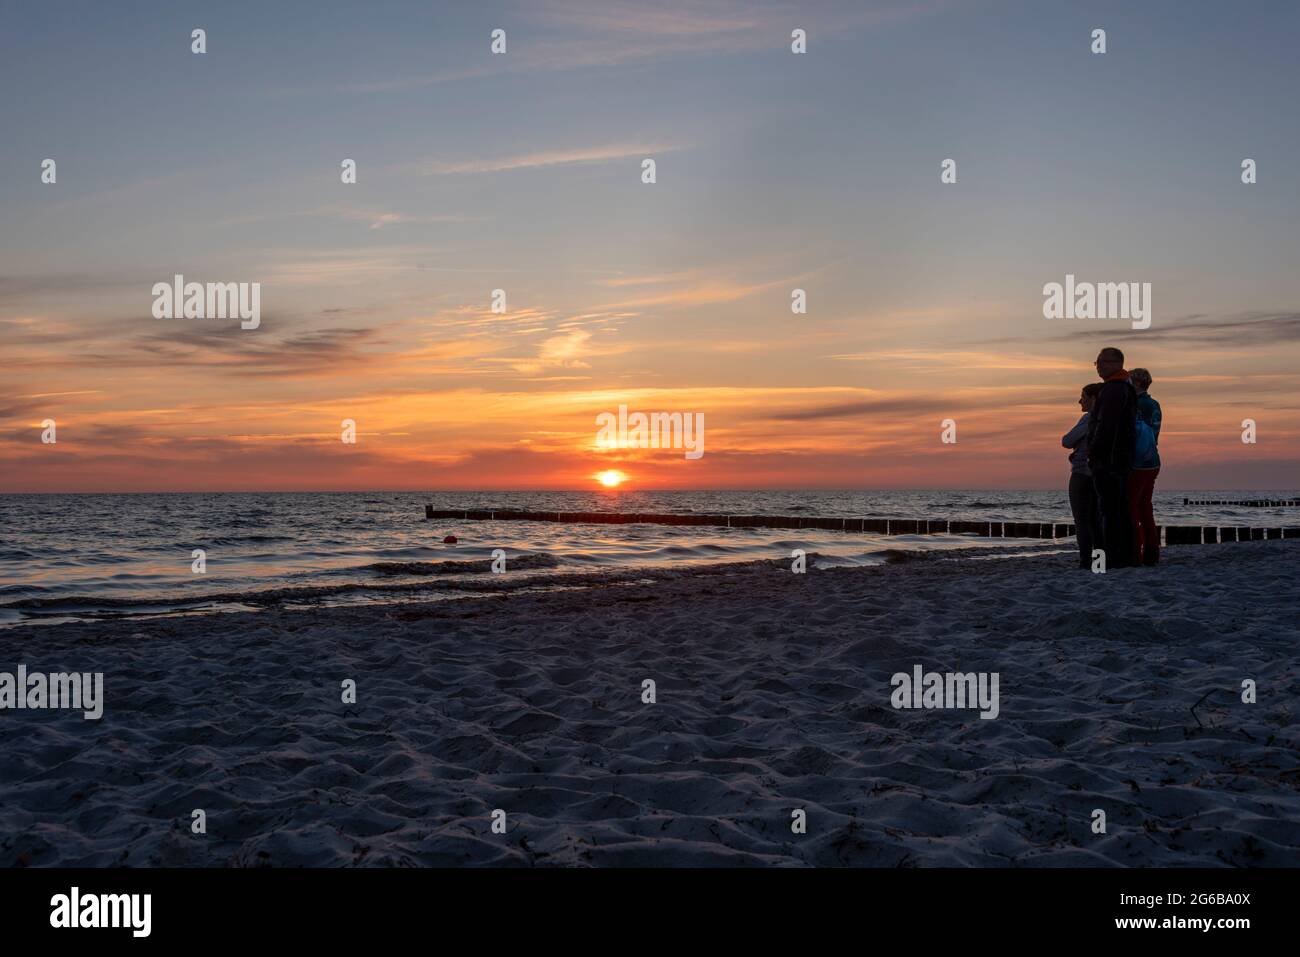 Hiddensee, Deutschland. Juni 2021. Urlauber stehen am Strand von Vitte und genießen einen farbenfrohen Sonnenuntergang. Jedes Jahr kommen viele Tausend Touristen auf die kleine Ostseeinsel, die wie ein Wellenbrecher die Westküste Rügens schützt. Die Insel wird von den Einheimischen auch "Dat söte Länneken" genannt. Quelle: Stephan Schulz/dpa-Zentralbild/ZB/dpa/Alamy Live News Stockfoto